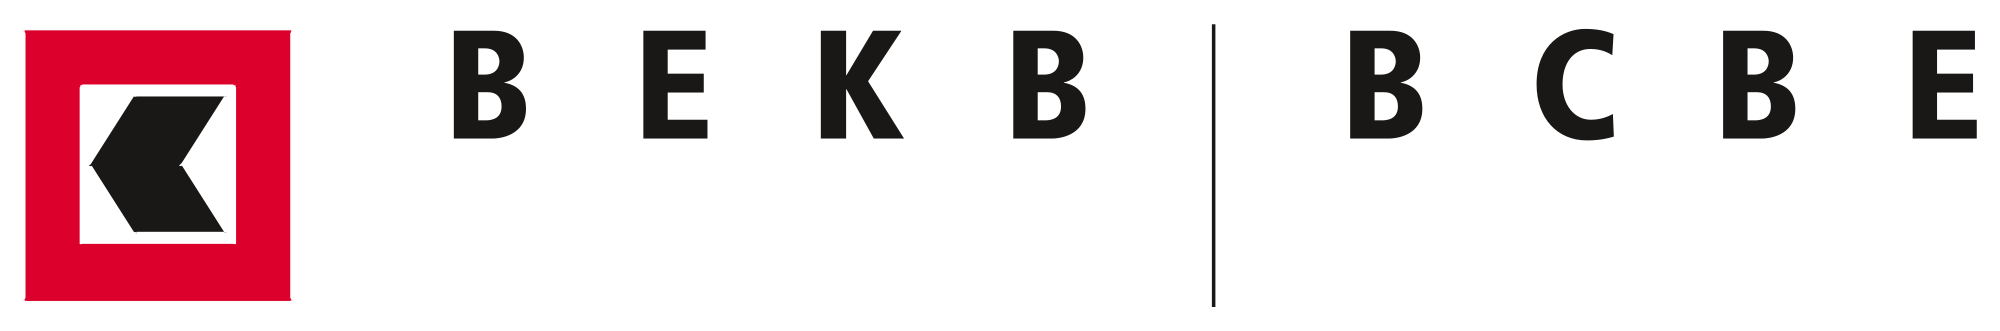 BEKB | BCBE Brand Logo